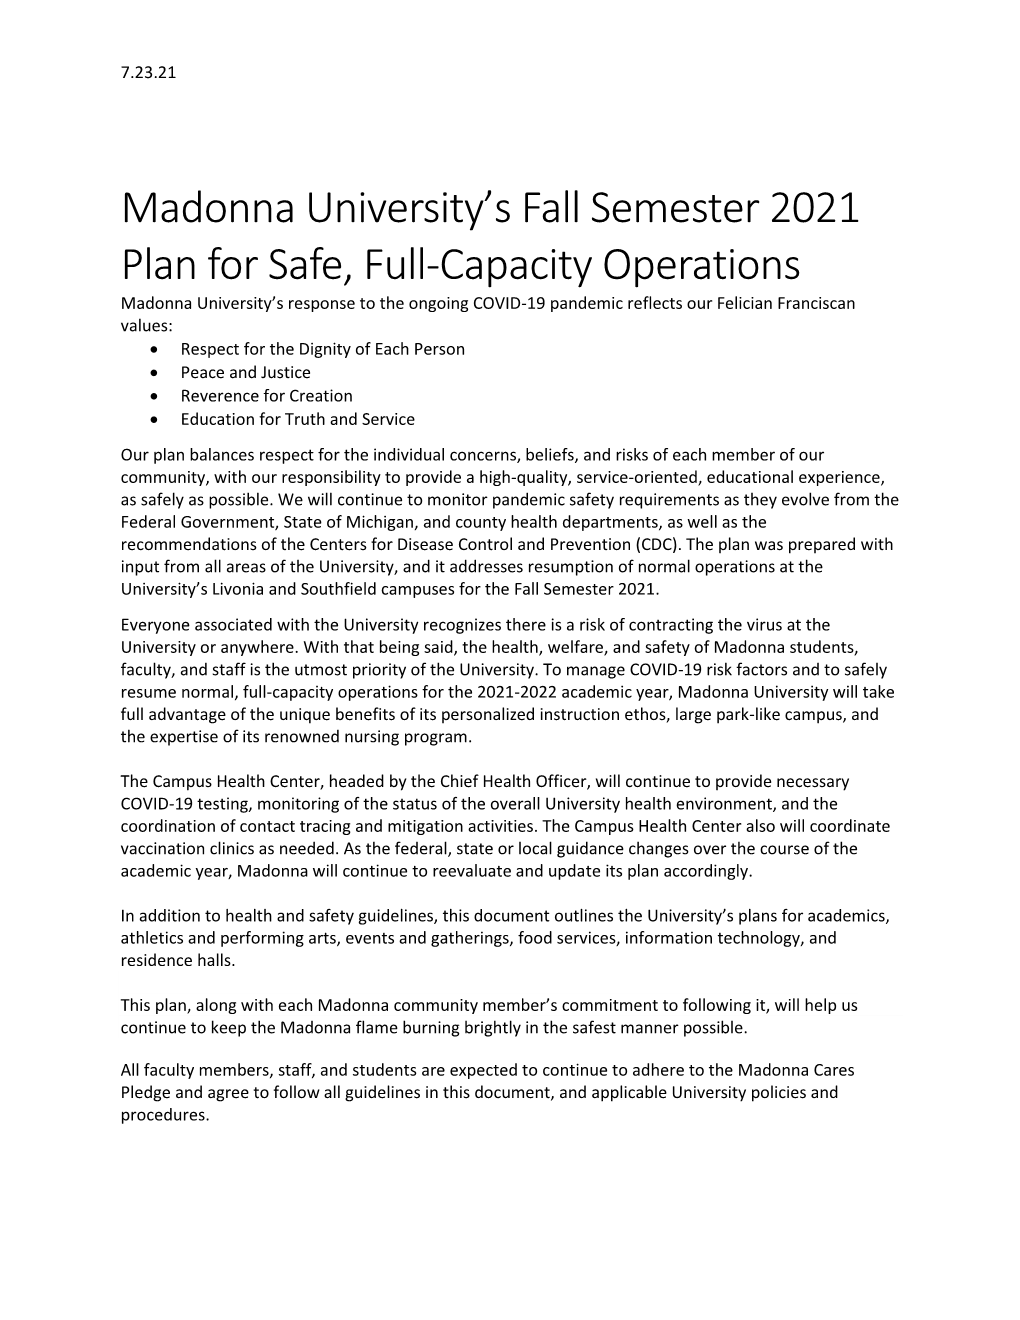 Fall Semester 2021 Full-Capacity Operations Plan